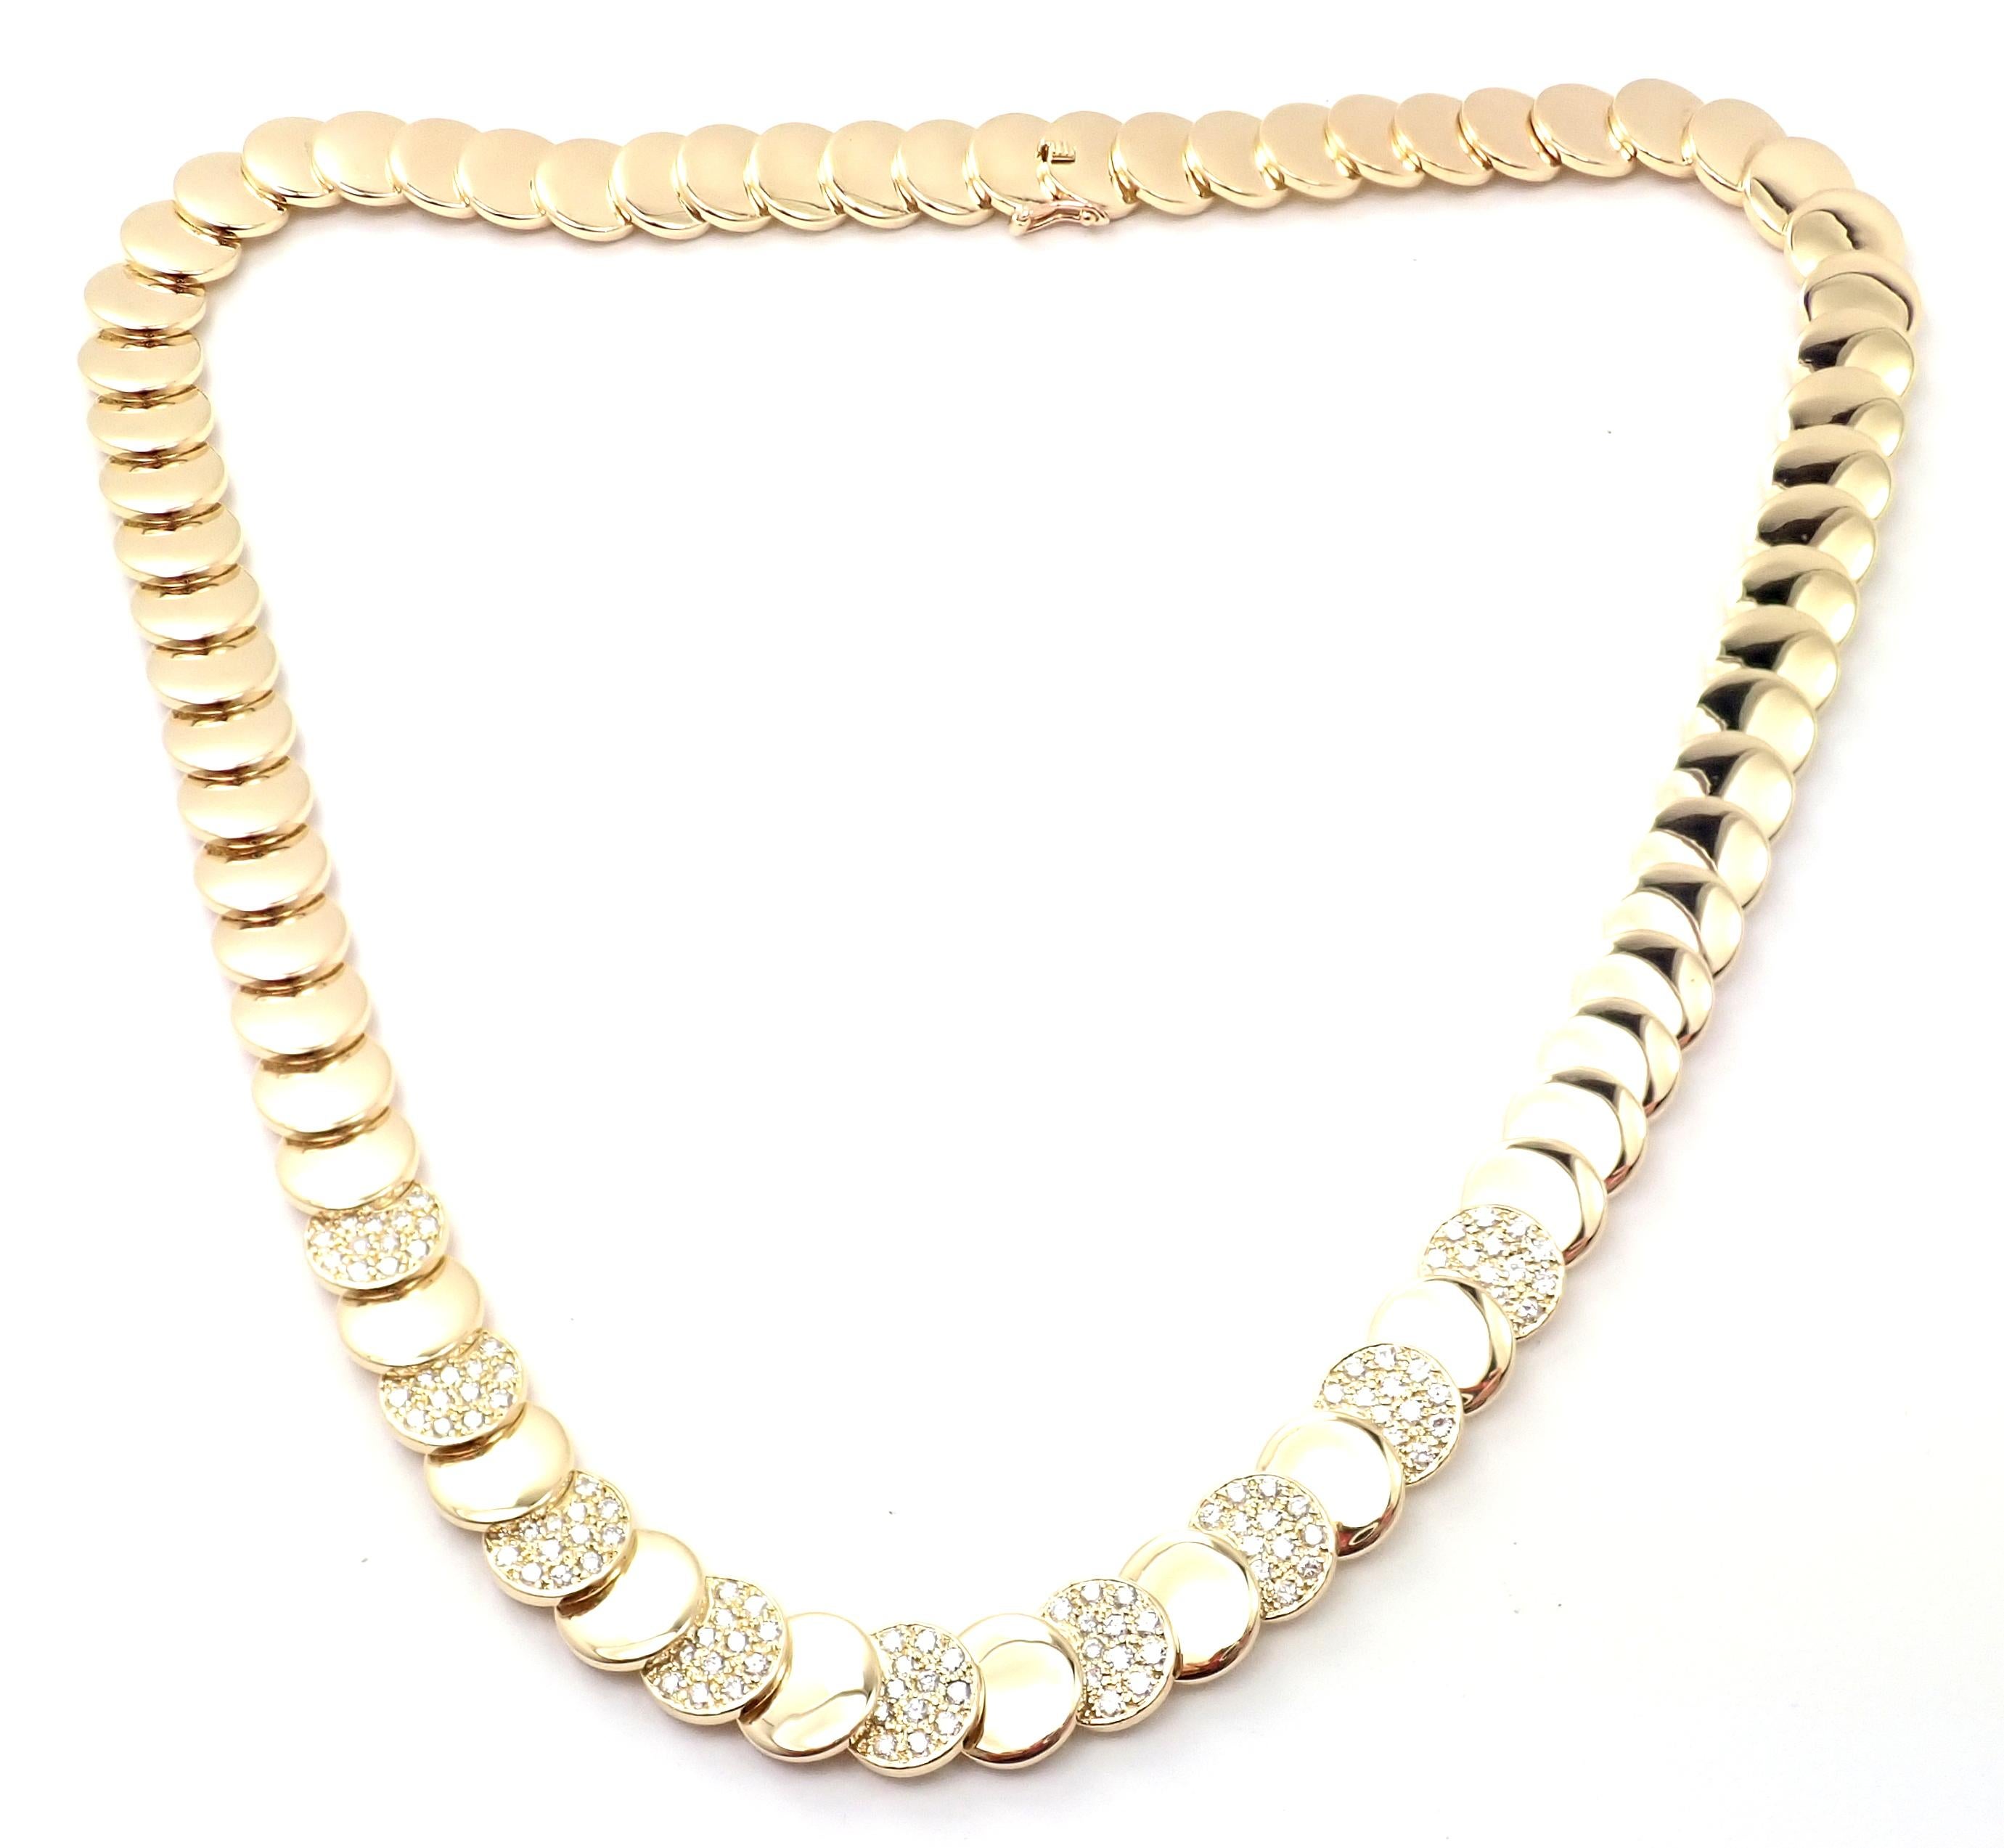 18k Gelbgold und Diamantscheiben Vintage Halskette von Van Cleef & Arpels. 
Mit 108 runden Diamanten im Brillantschliff, Reinheit VVS1, Farbe E
gesamtgewicht ca. 1,64ct
Diese Halskette wird mit einem Service-Papier aus einem VCA-Laden in NYC